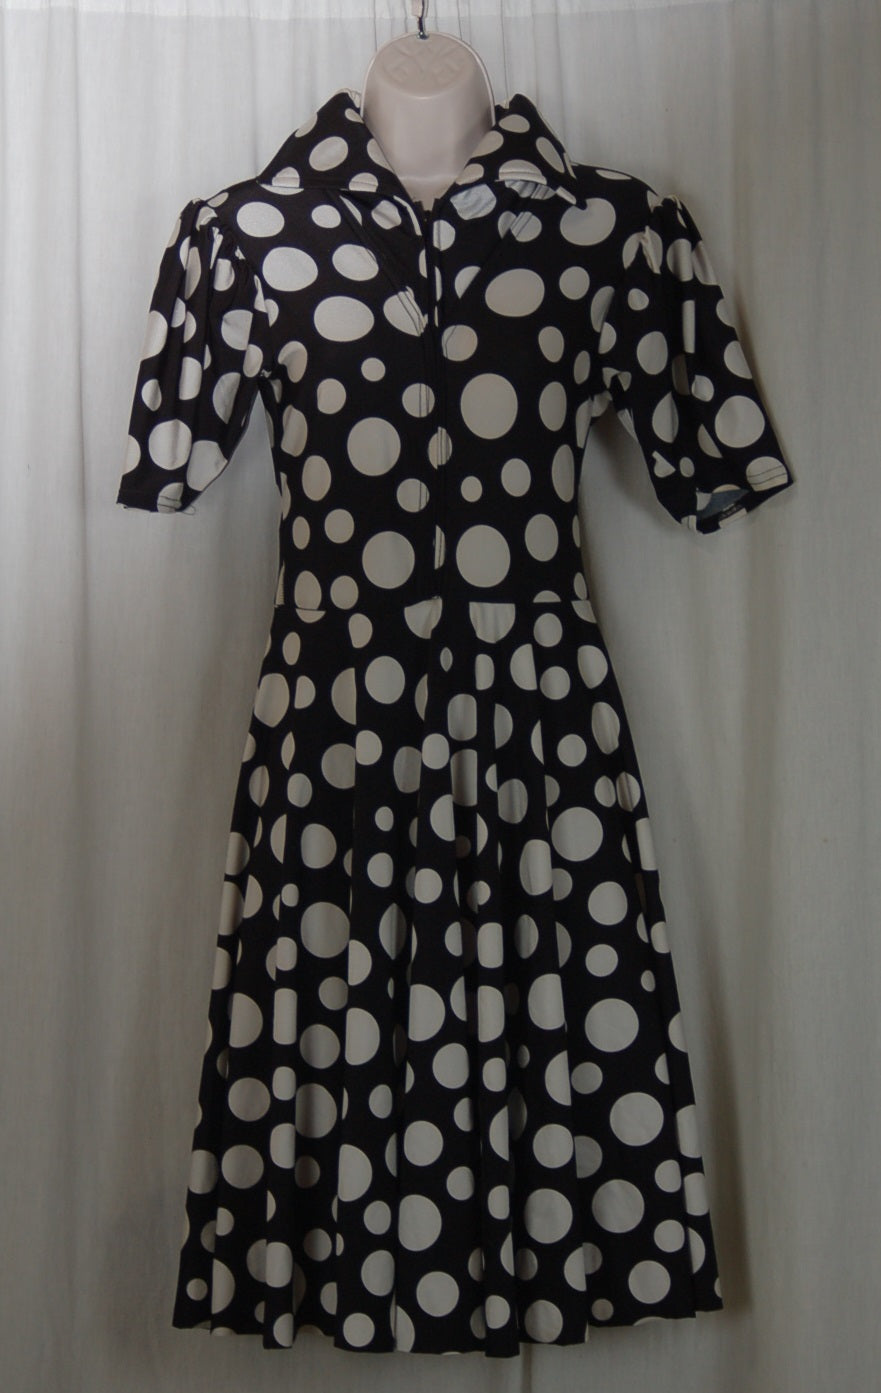 7 black/white polka dot dresses ADT Bodywear